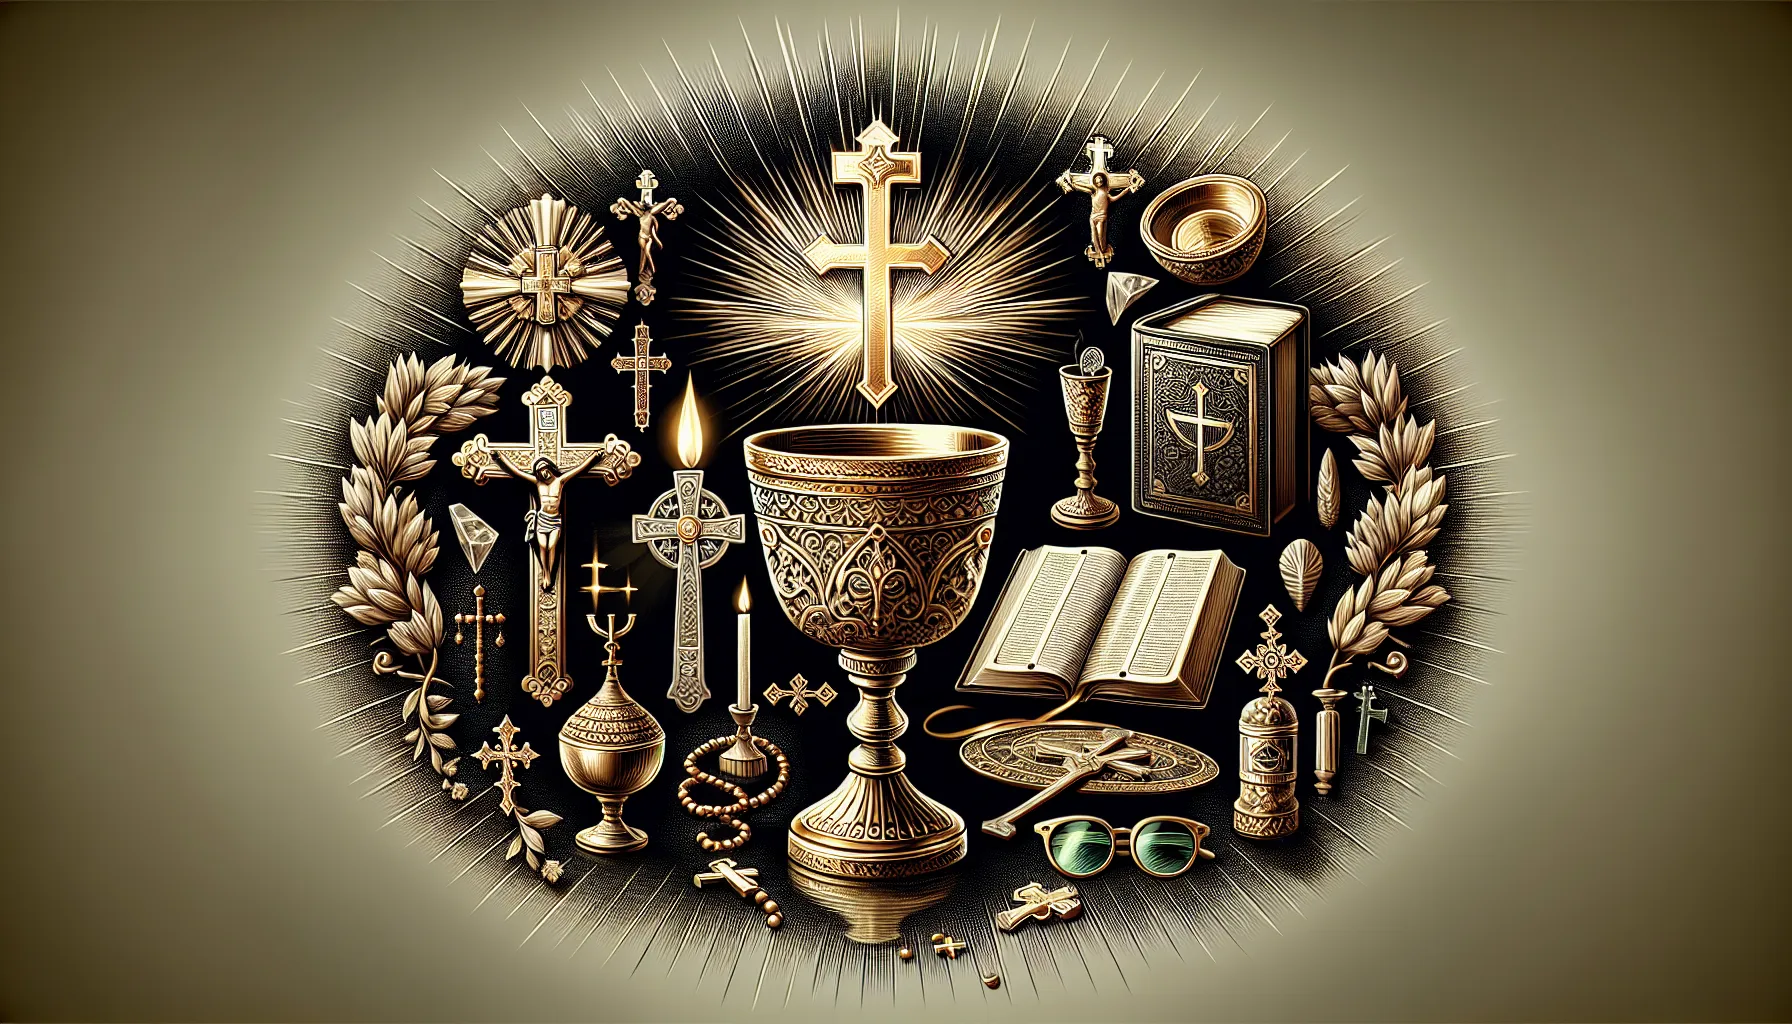 Representación de los siete sacramentos católicos basados en la Biblia. Ilustración de un cáliz